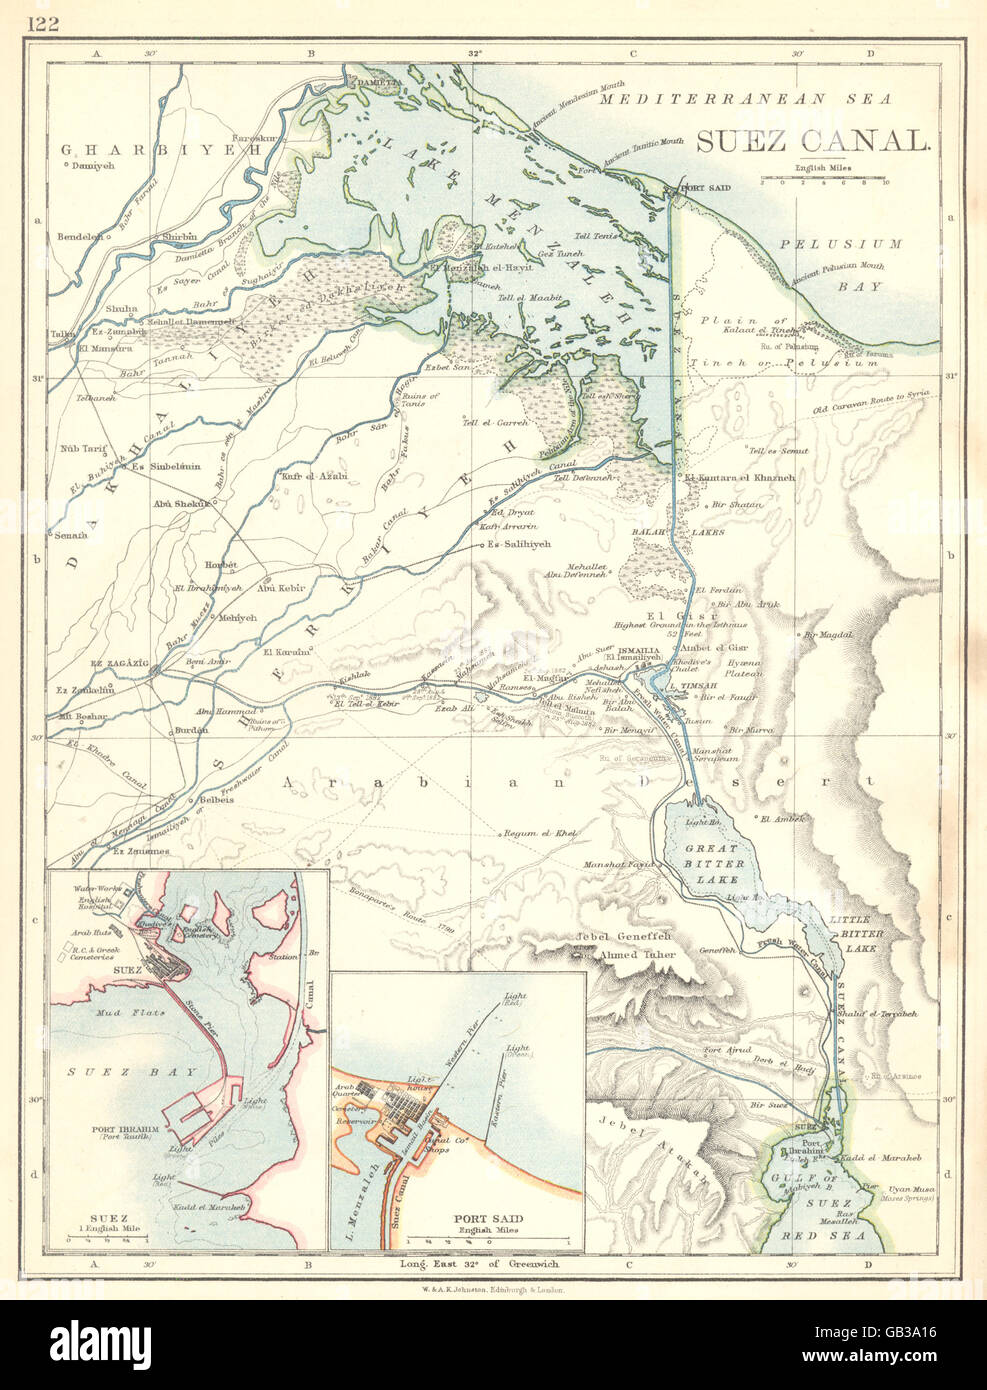 SUEZ CANAL:Suez Port Said town plans. Suez canal, 1897 antique map Stock Photo